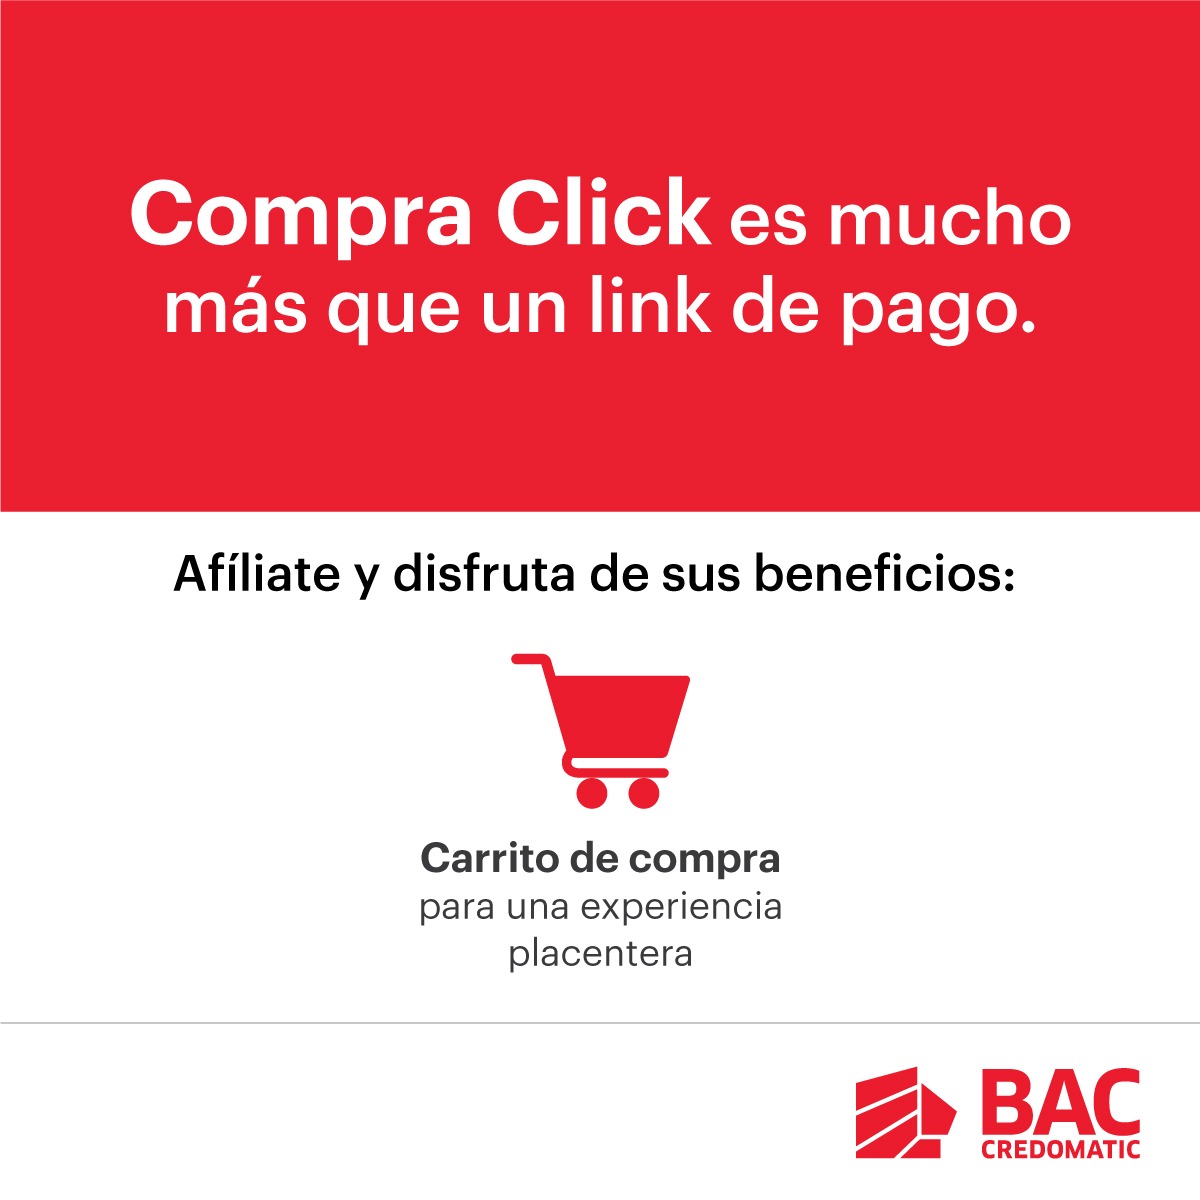 Compra-Click una herramienta de BAC que incrementa tus ventas en línea de forma rápida, fácil y segura.